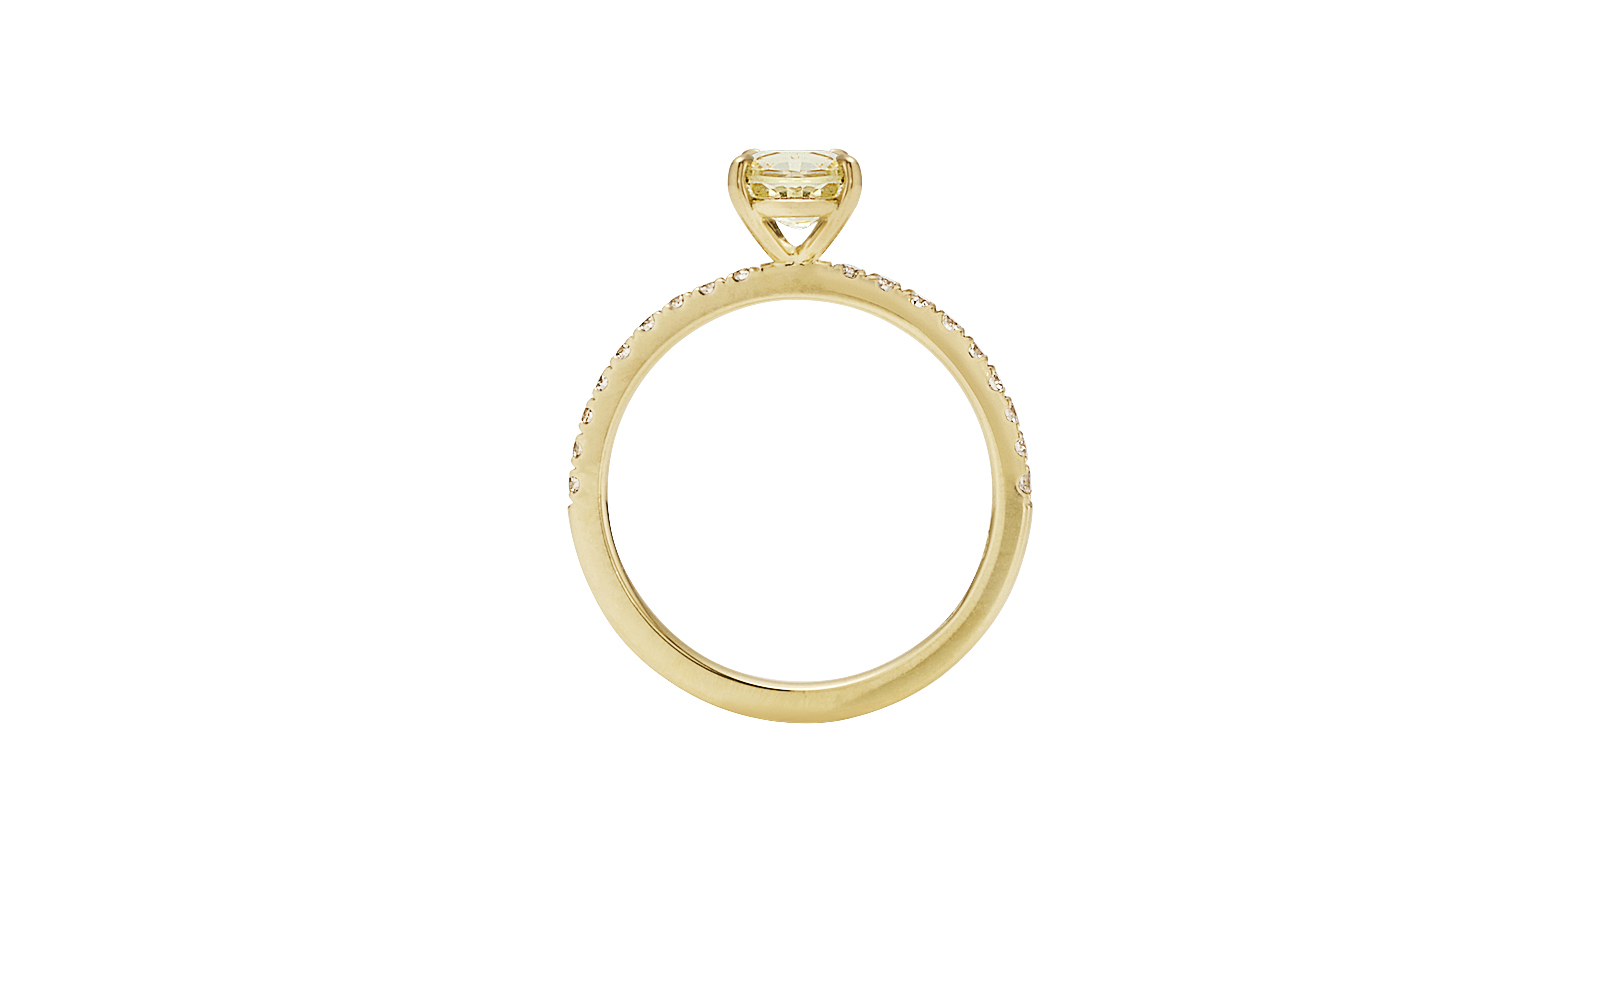 Moonrise Ring Round Light Yellow Ceylon Sapphire and Diamonds 18k Yellow Gold